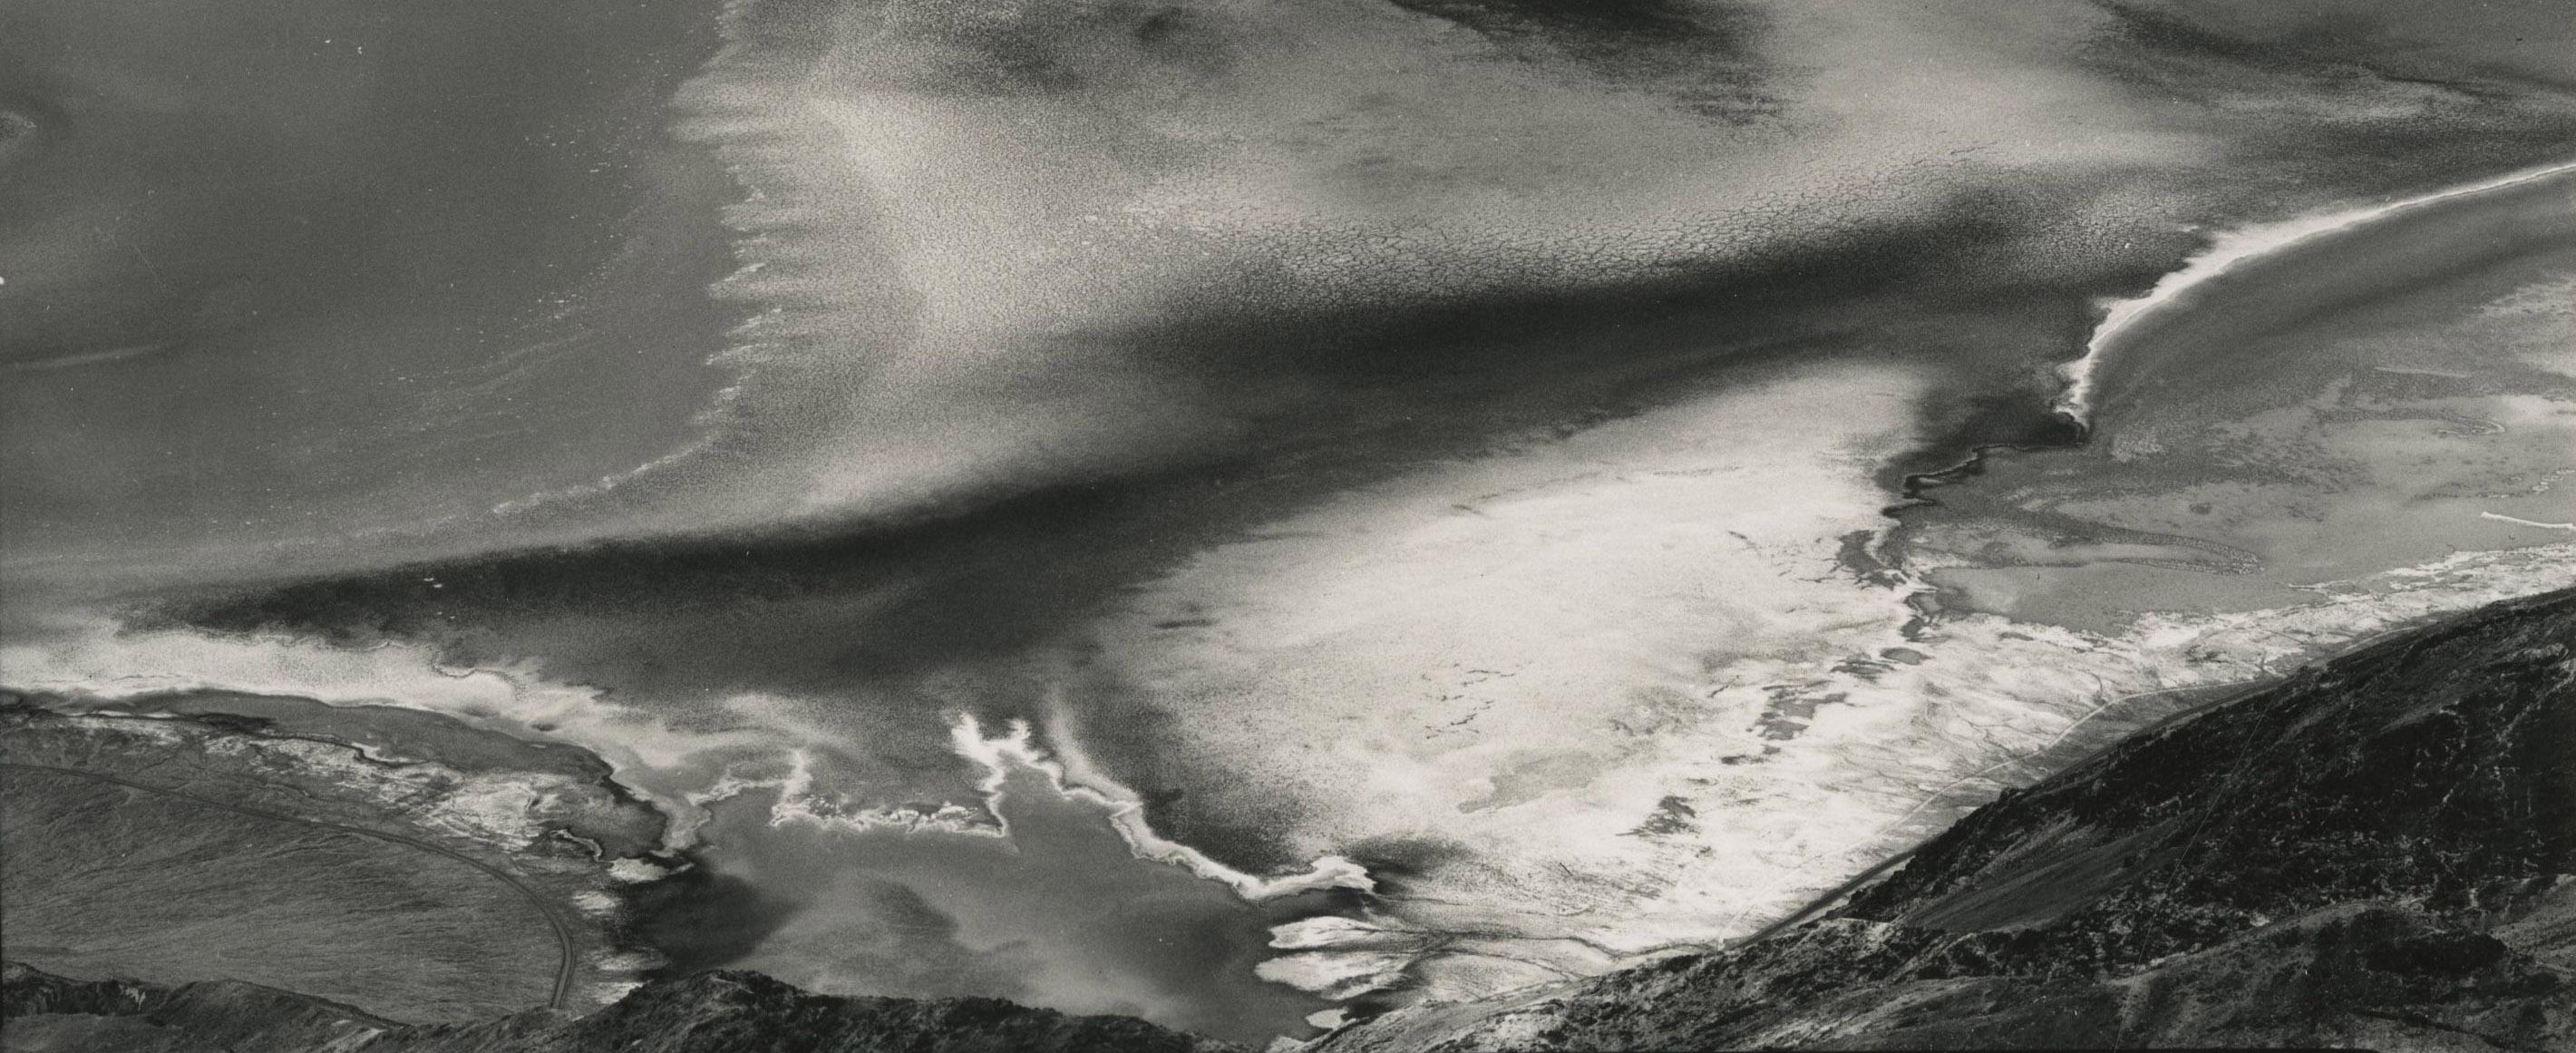 Dantes Aussicht, Death Valley
Gelatinesilberdruck, 1938
Vorzeichenlos
Verso mit dem Nachlassstempel signiert (siehe Foto)
Ein lebenslanger Druck von Brett Weston (1953-1954), betreut von seinem Vater Edward
Auflage von 5 oder 6